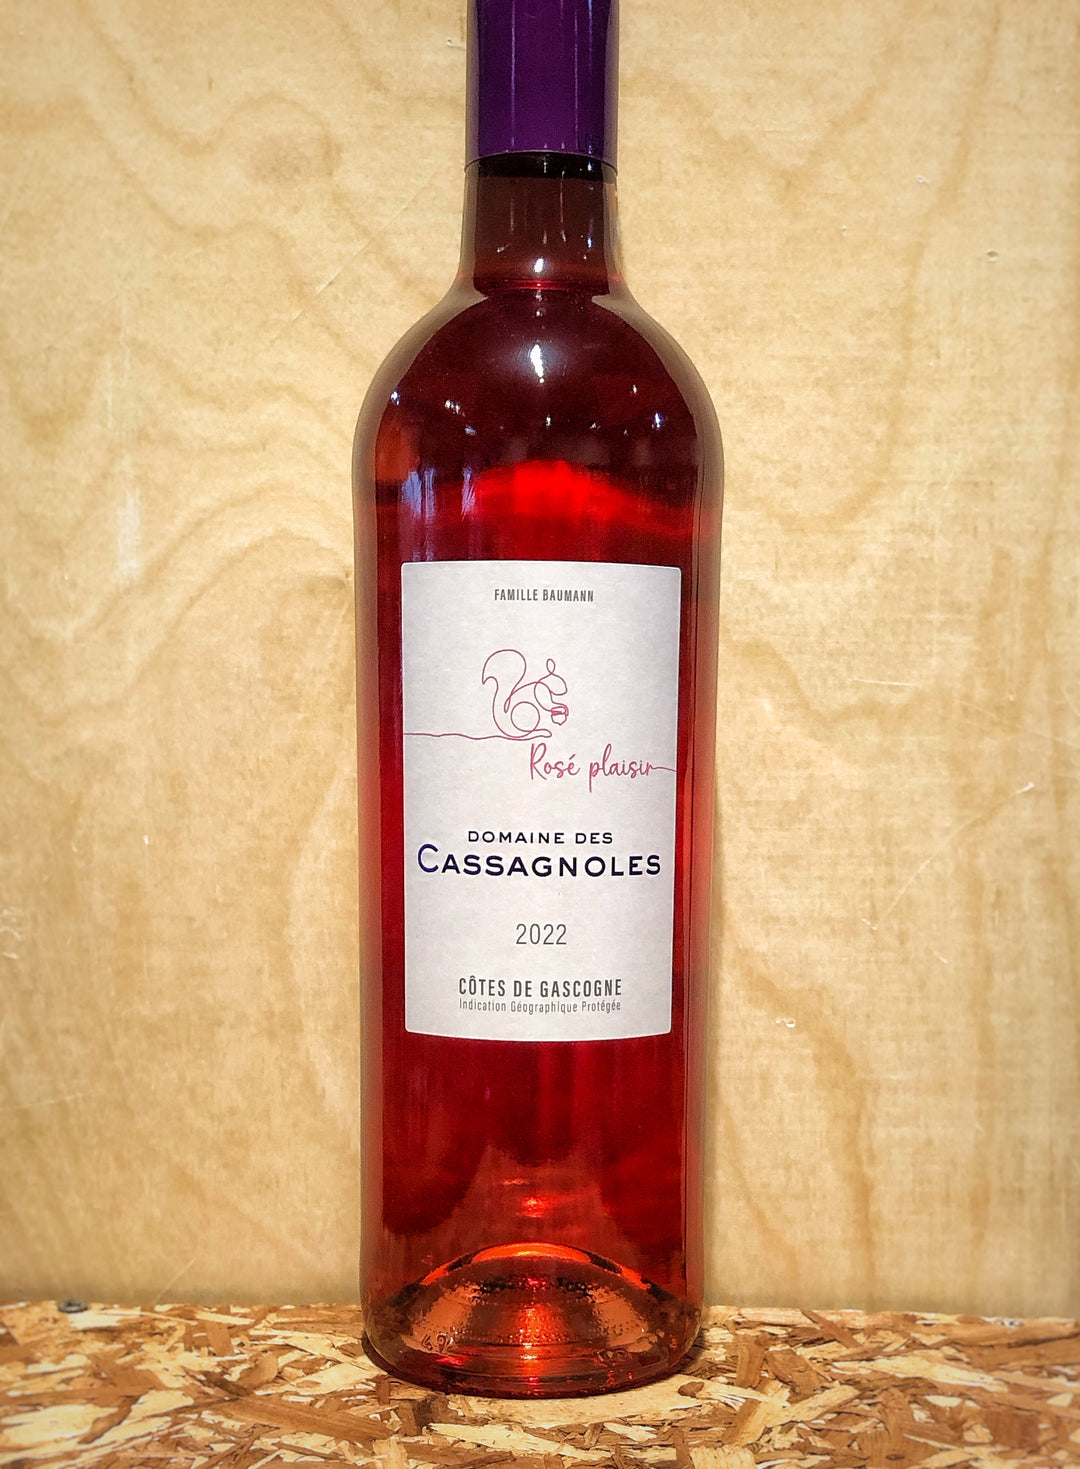 Domaine de Cassagnoles 'Plaisir' Rosé 2022 (Cotes de Gascogne, France)